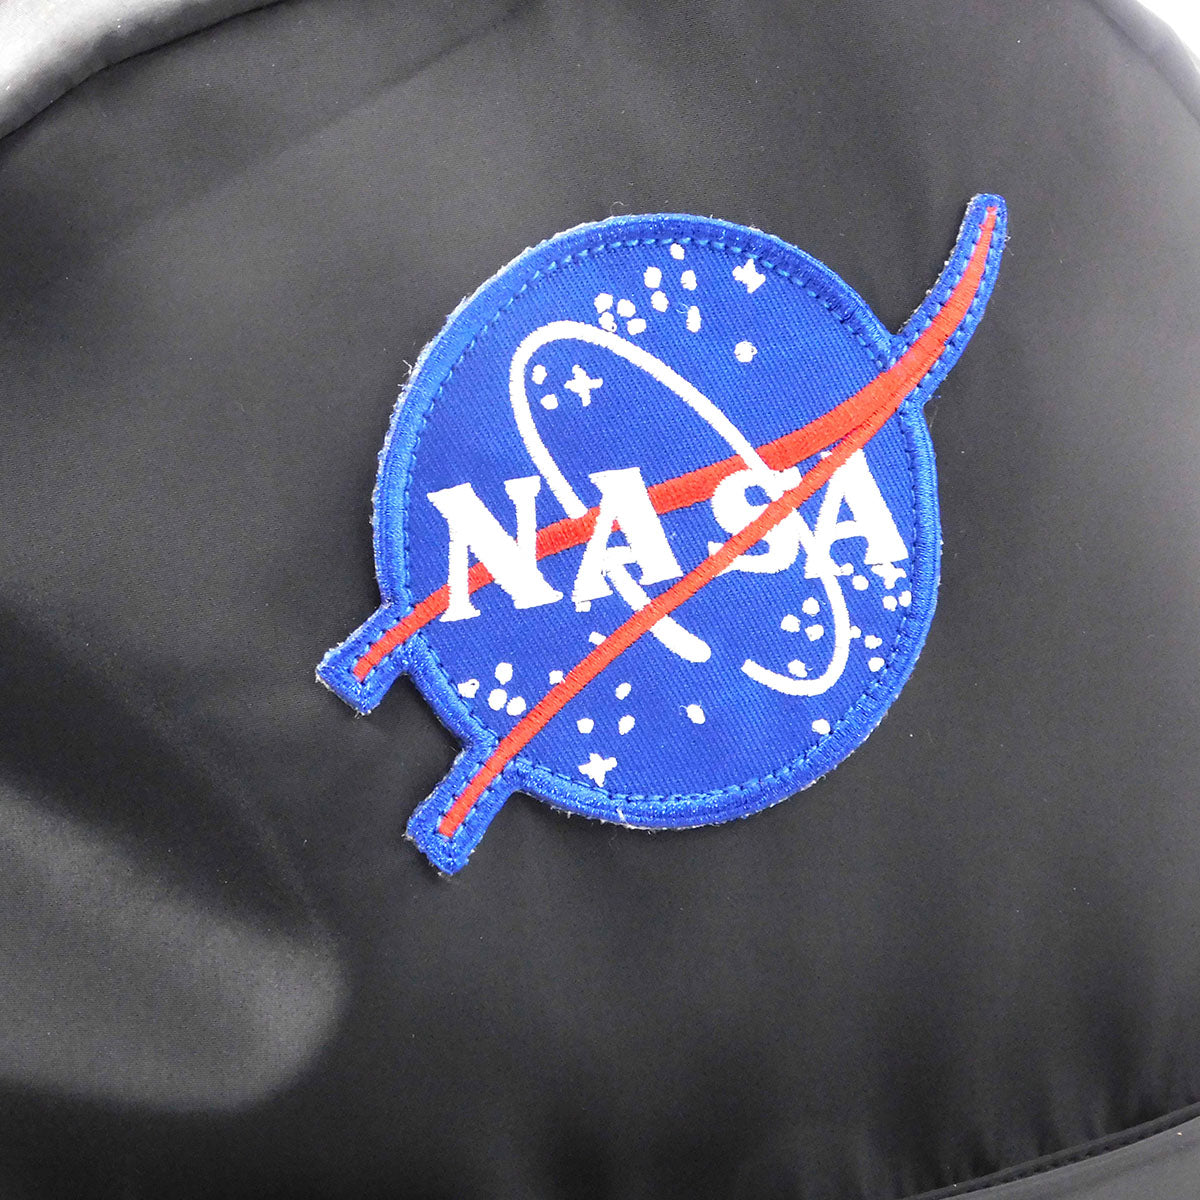 Voyager NASA Backpack